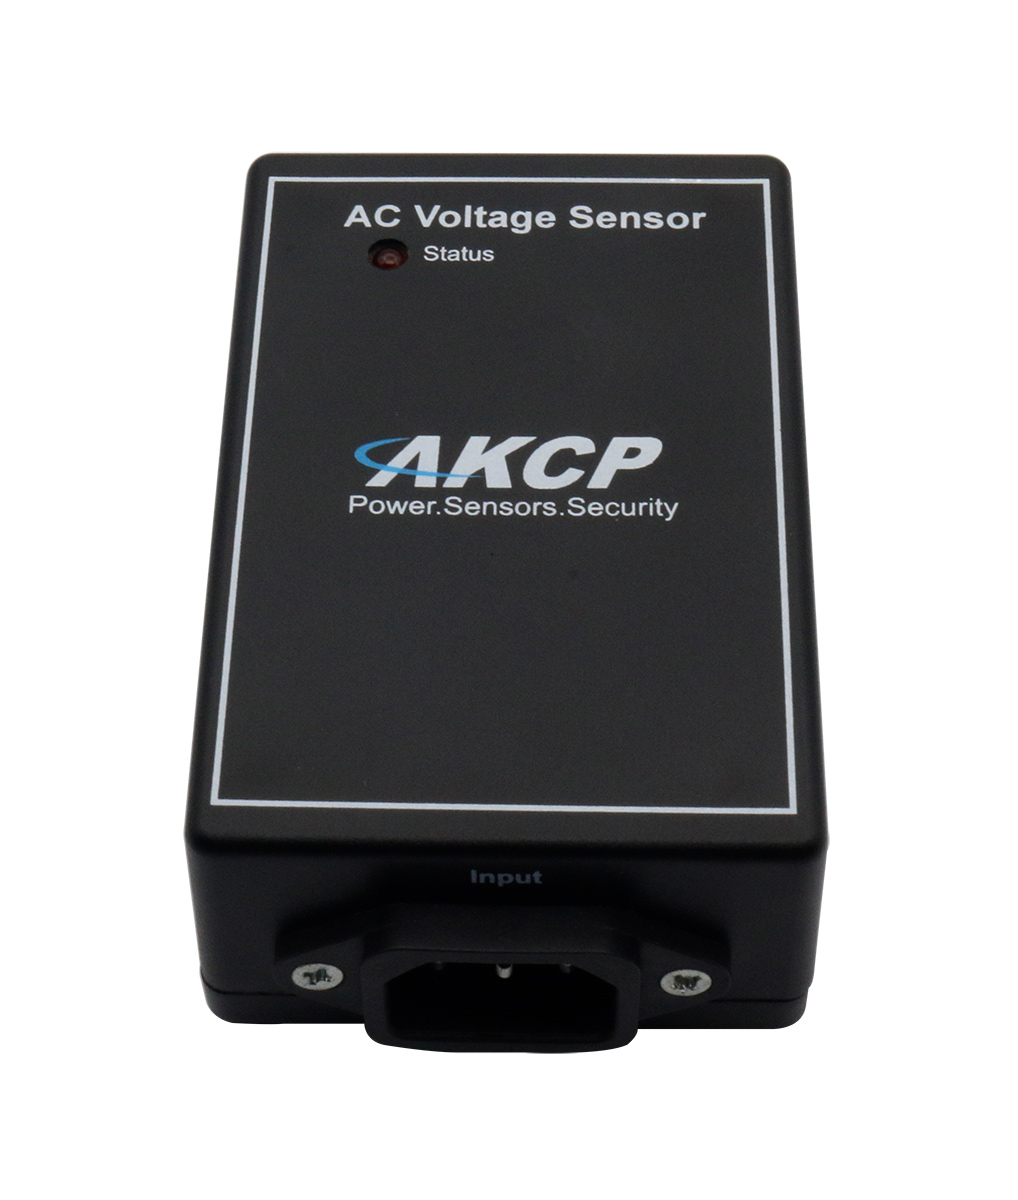 AKCP - ACV15 - Wechselspannungssensor